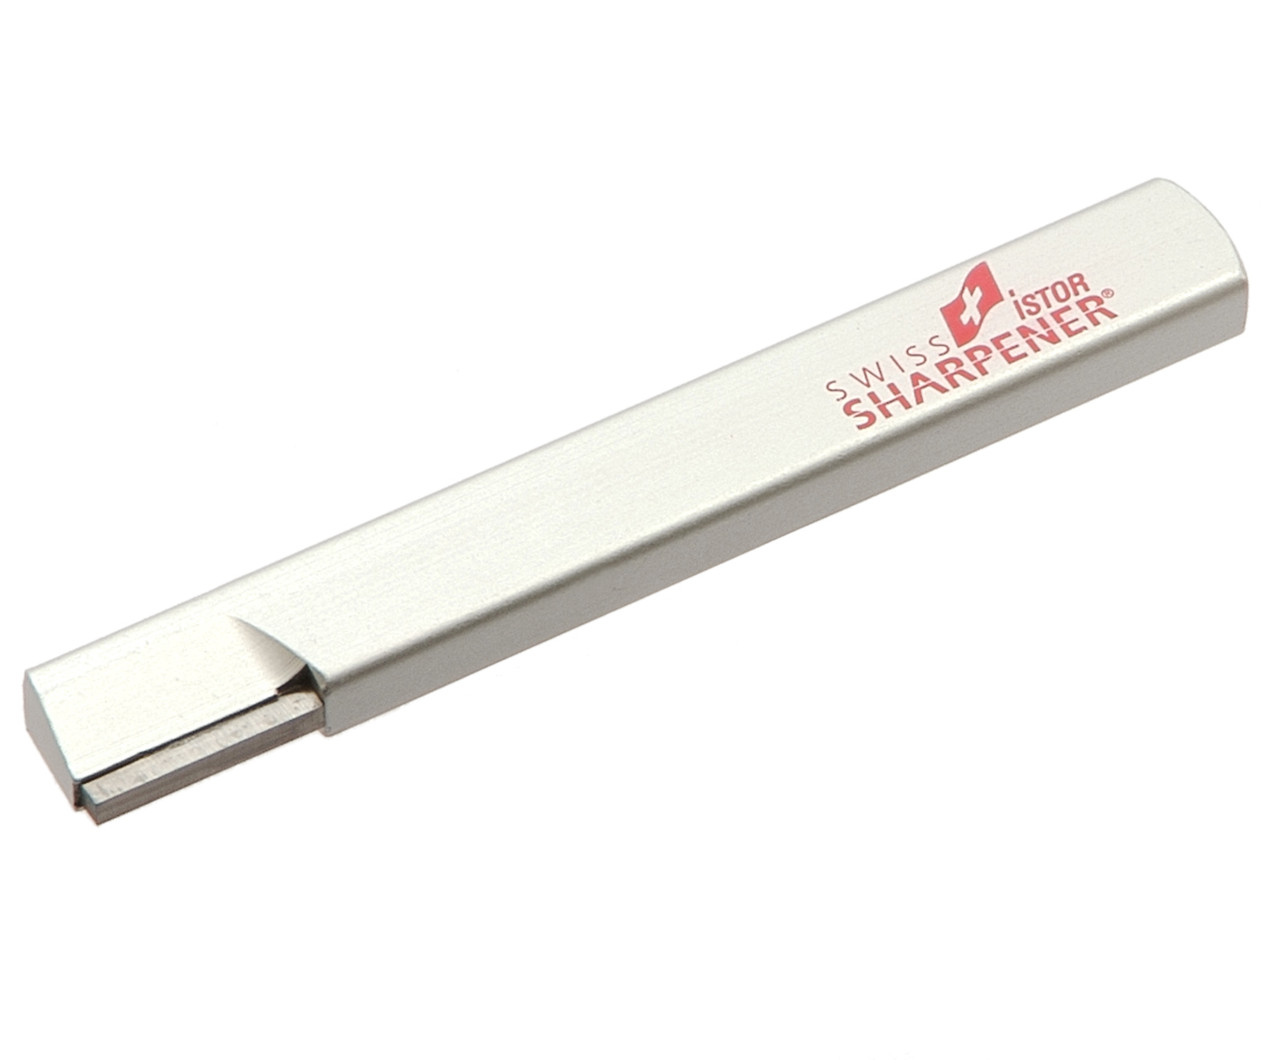 ISTOR Standard Knife Sharpener